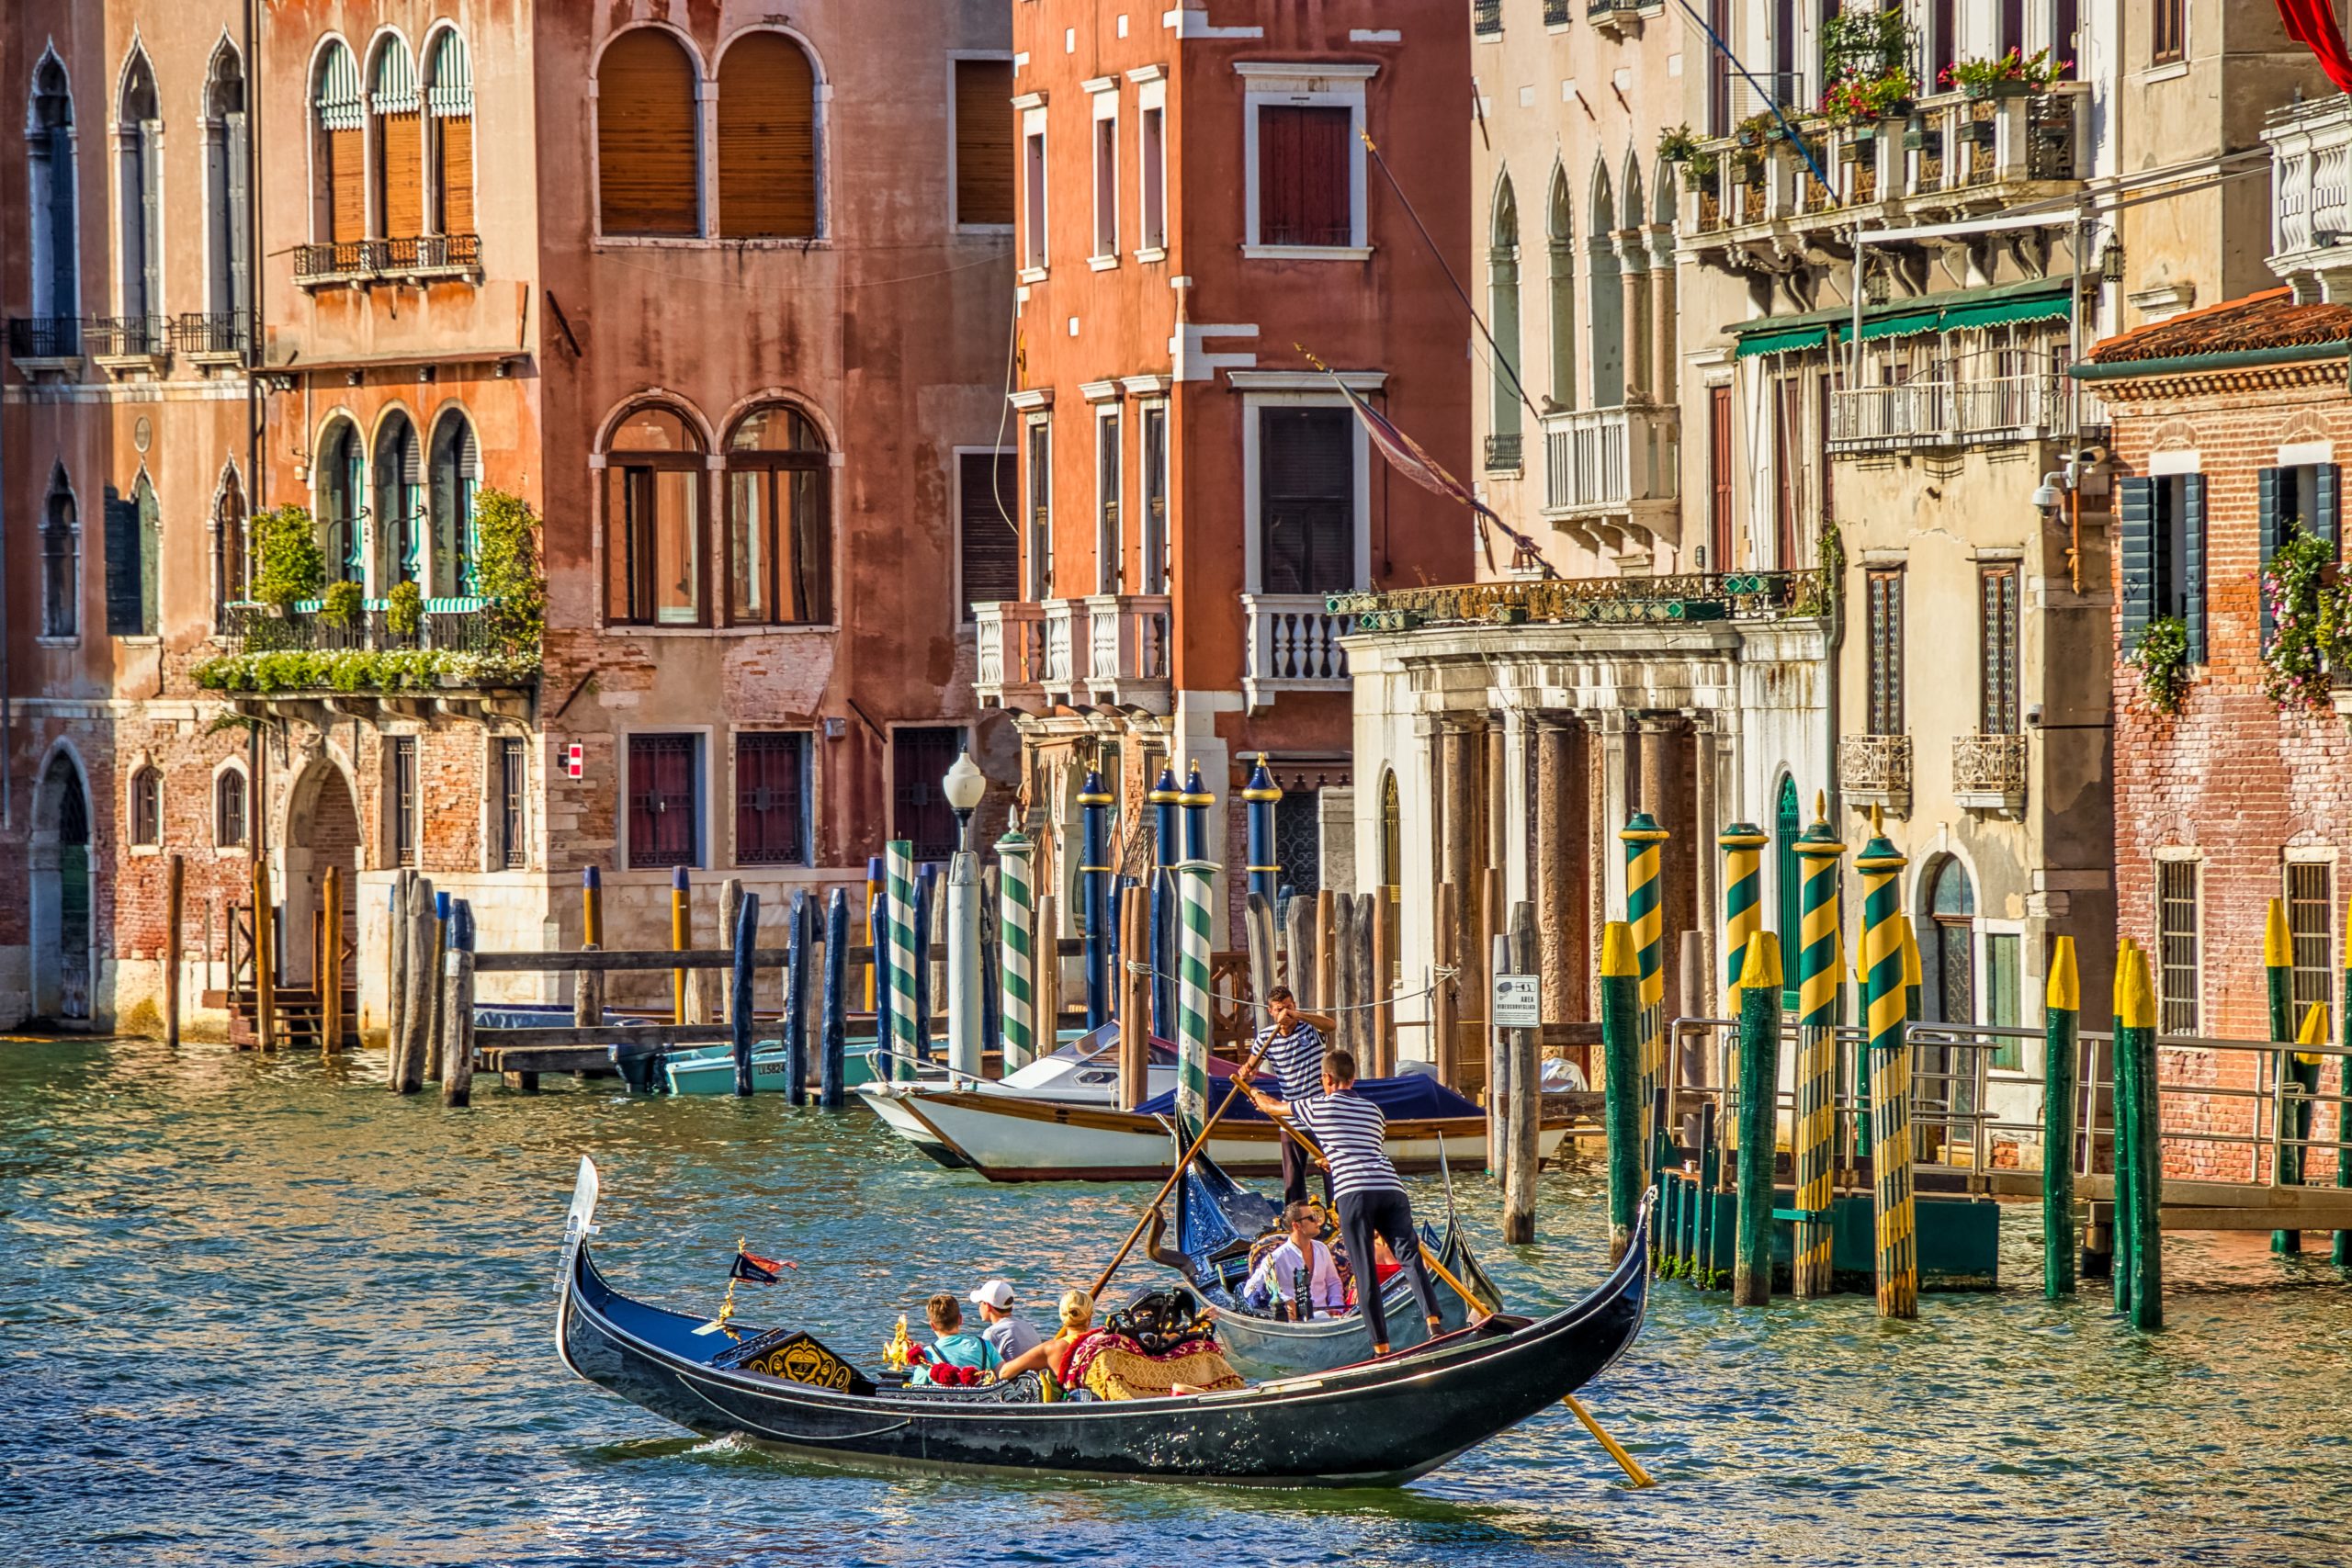 Найди страну италия. Италия Венеция гондолы. Италия гондола Венеция гондола. Венеция каналы гондолы. Гранд канал Италия гондолы.